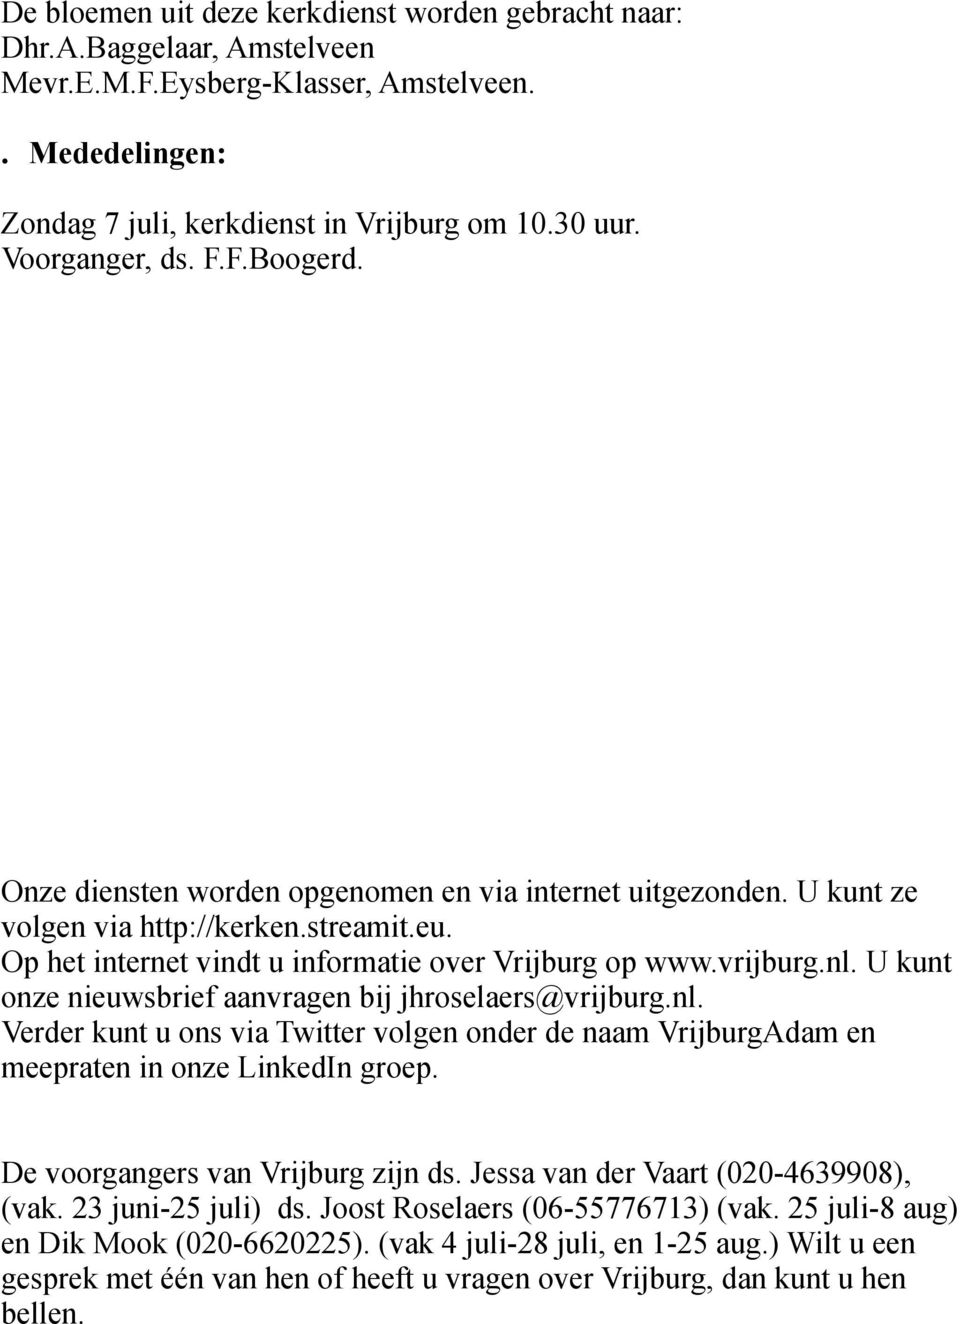 vrijburg.nl. U kunt onze nieuwsbrief aanvragen bij jhroselaers@vrijburg.nl. Verder kunt u ons via Twitter volgen onder de naam VrijburgAdam en meepraten in onze LinkedIn groep.